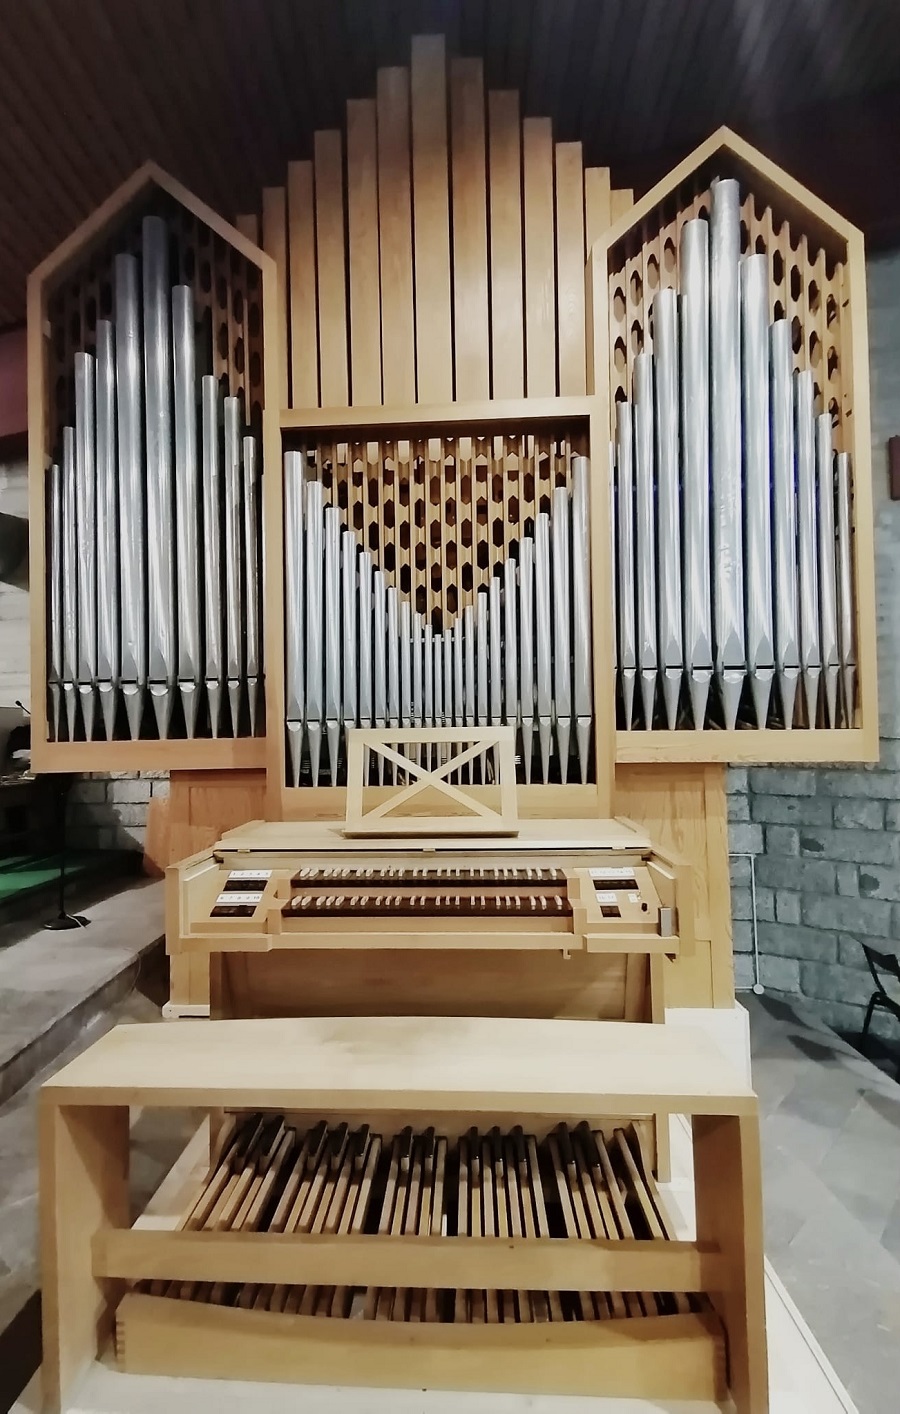 L’organista ufficiale del Papa a Campiglio. Al via l’Mdc Organ Festival